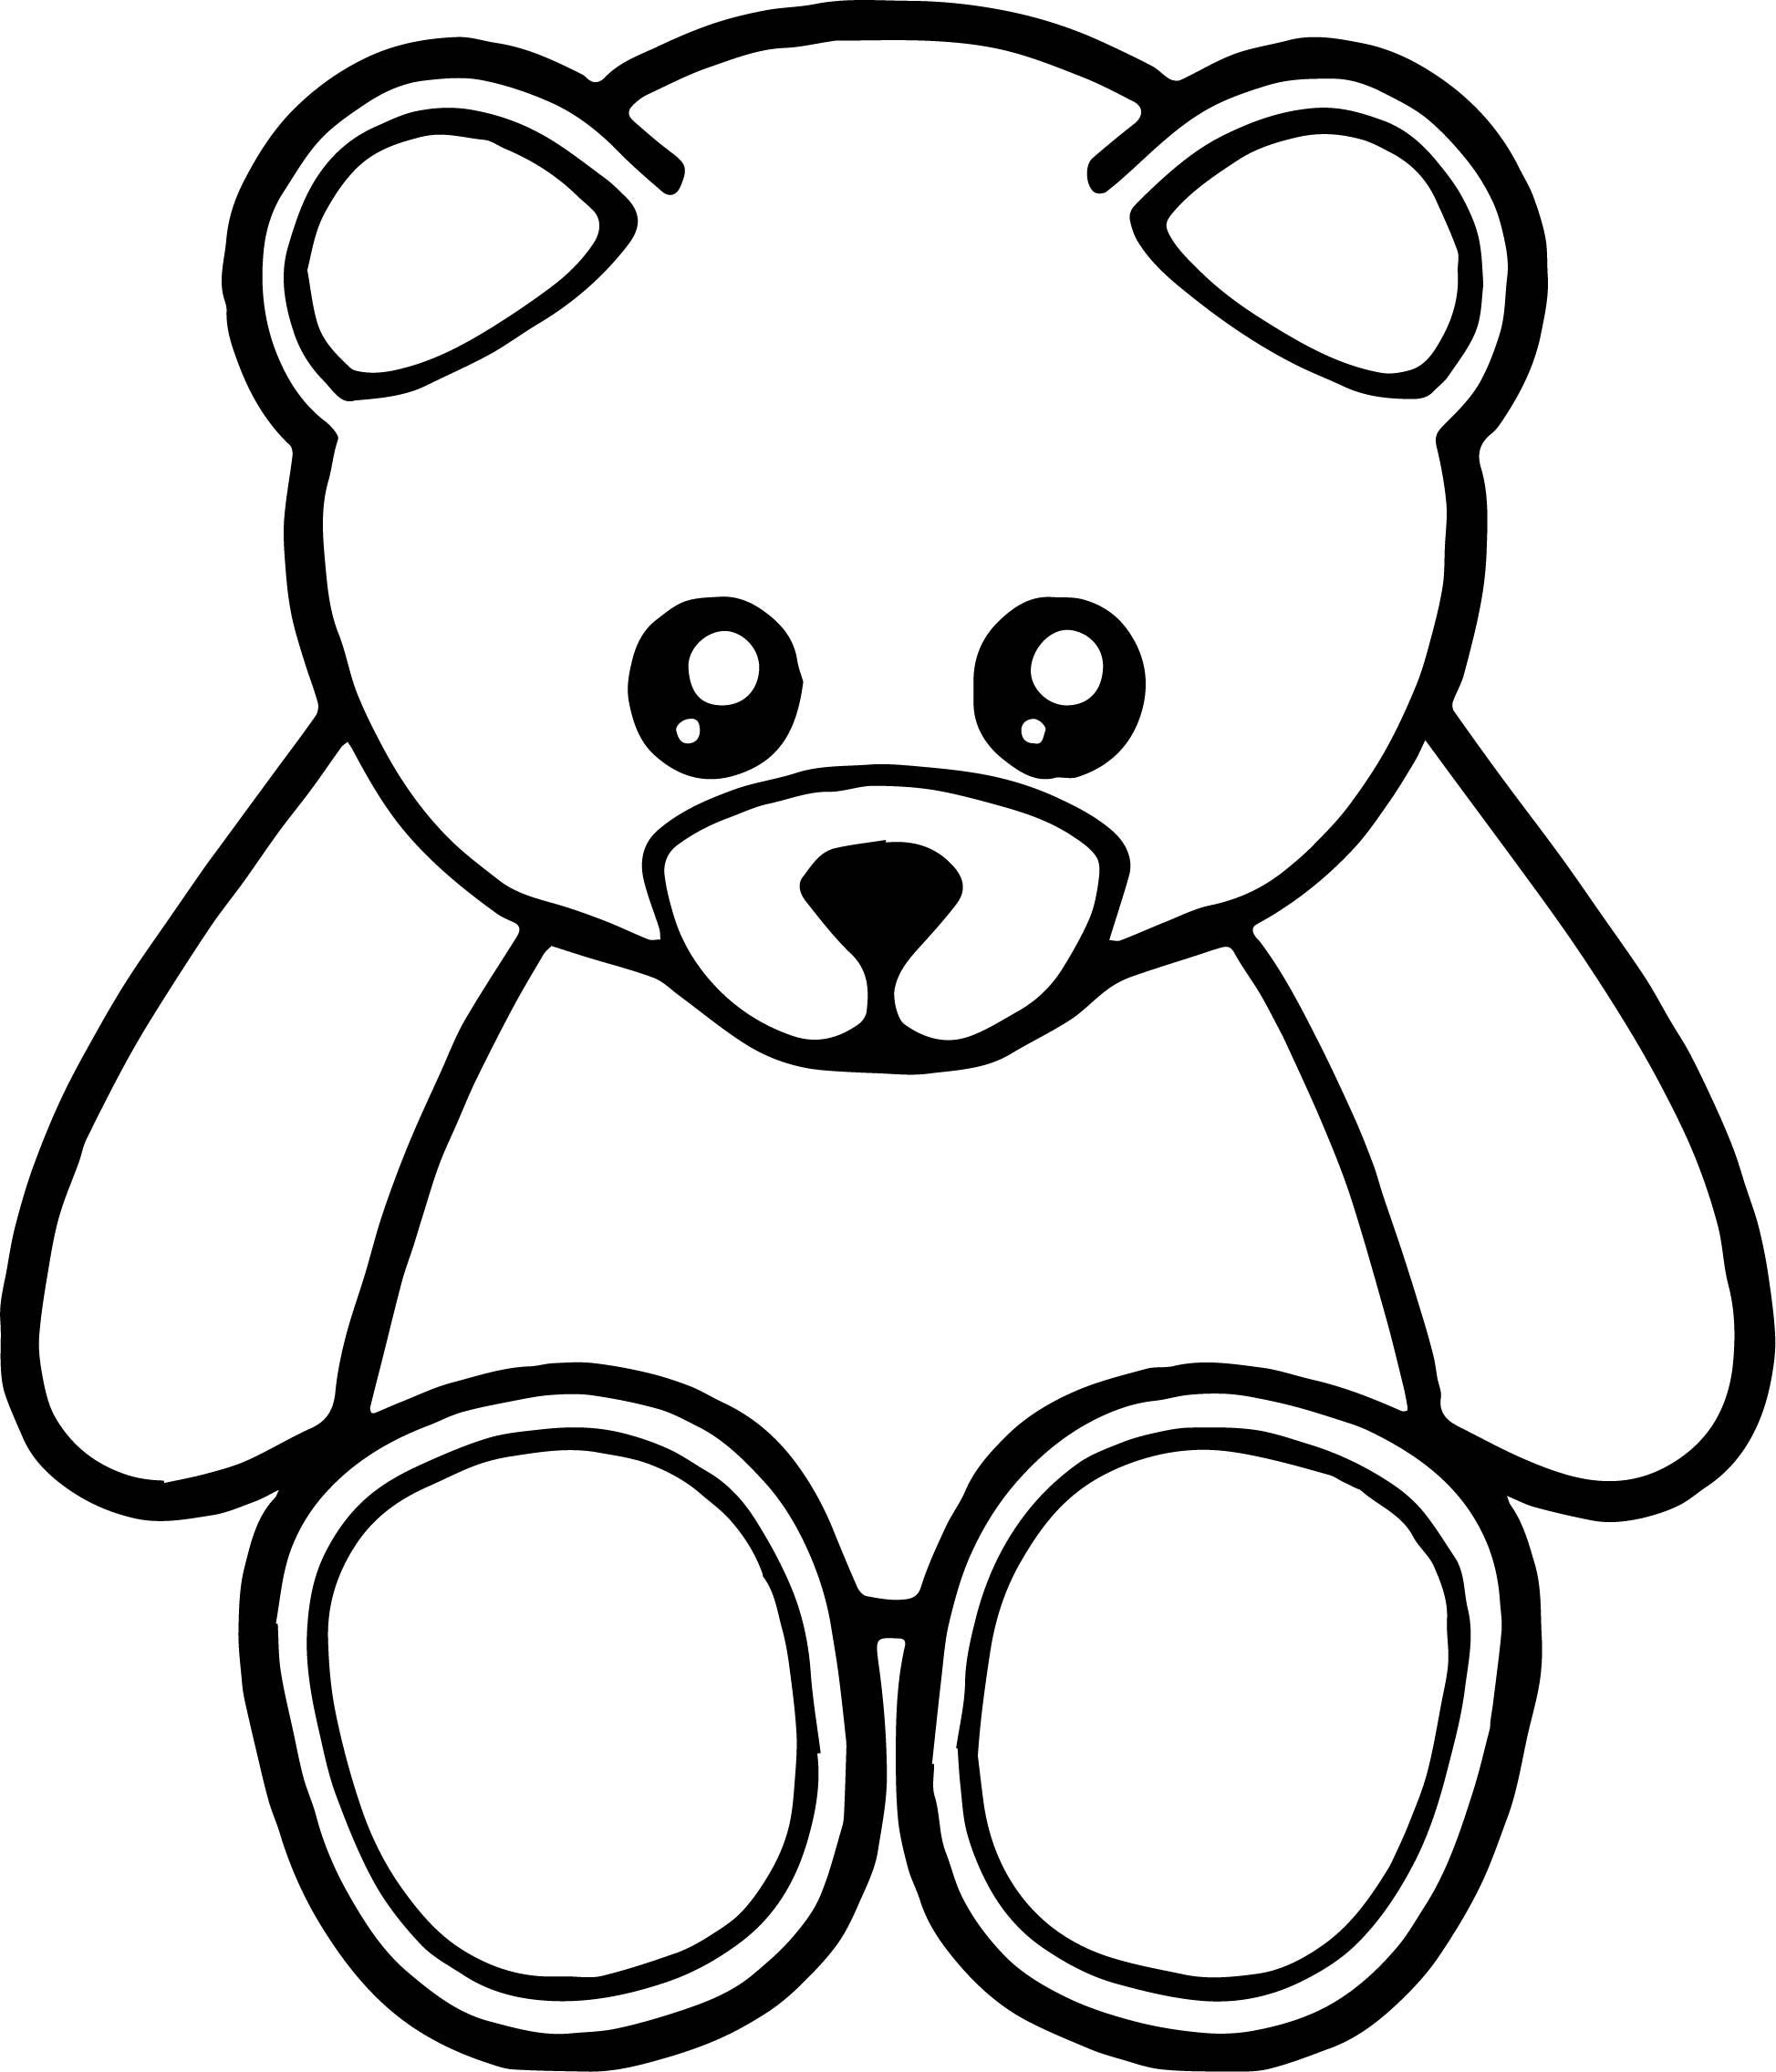 Распечатка медведя. Раскраска. Медвежонок. Мишка раскраска для детей. Раскраска "мишки". Медвежонок раскраска для детей.